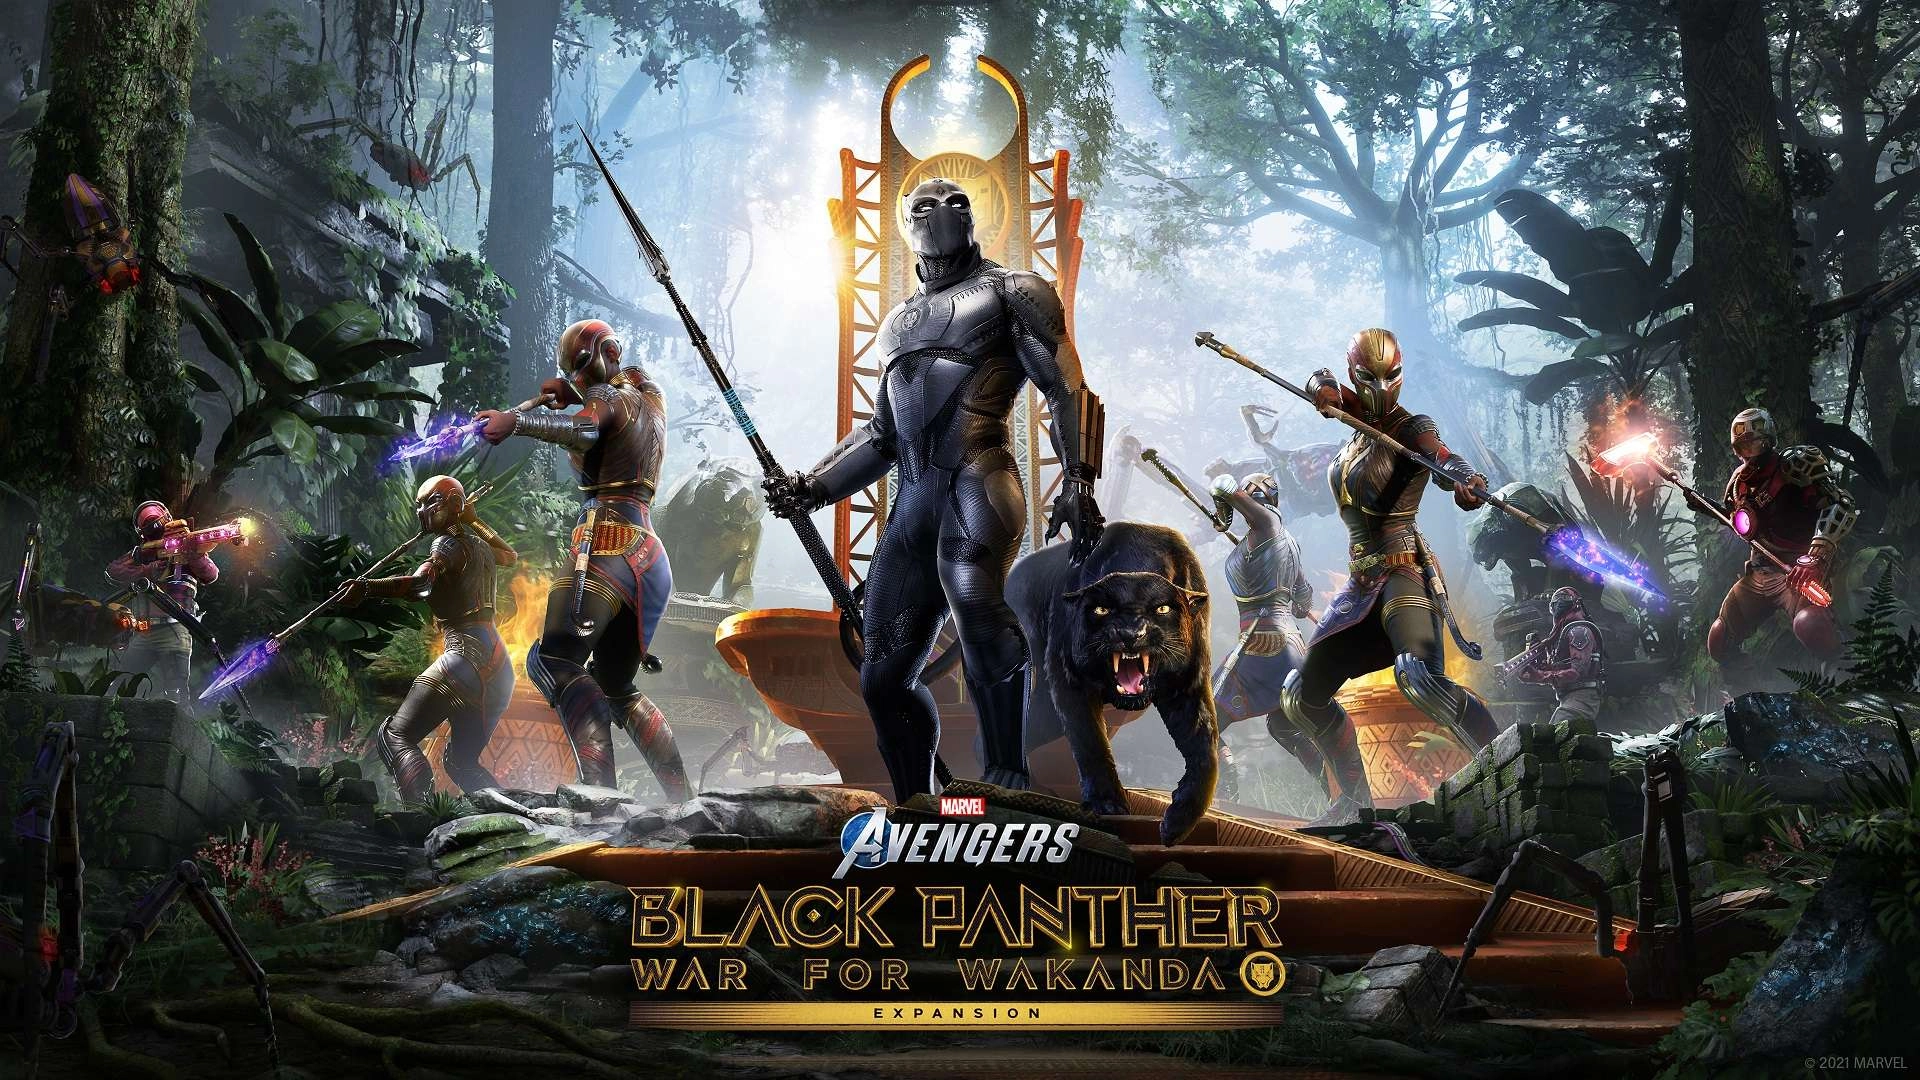 Marvel's Avengers: War for Wakanda